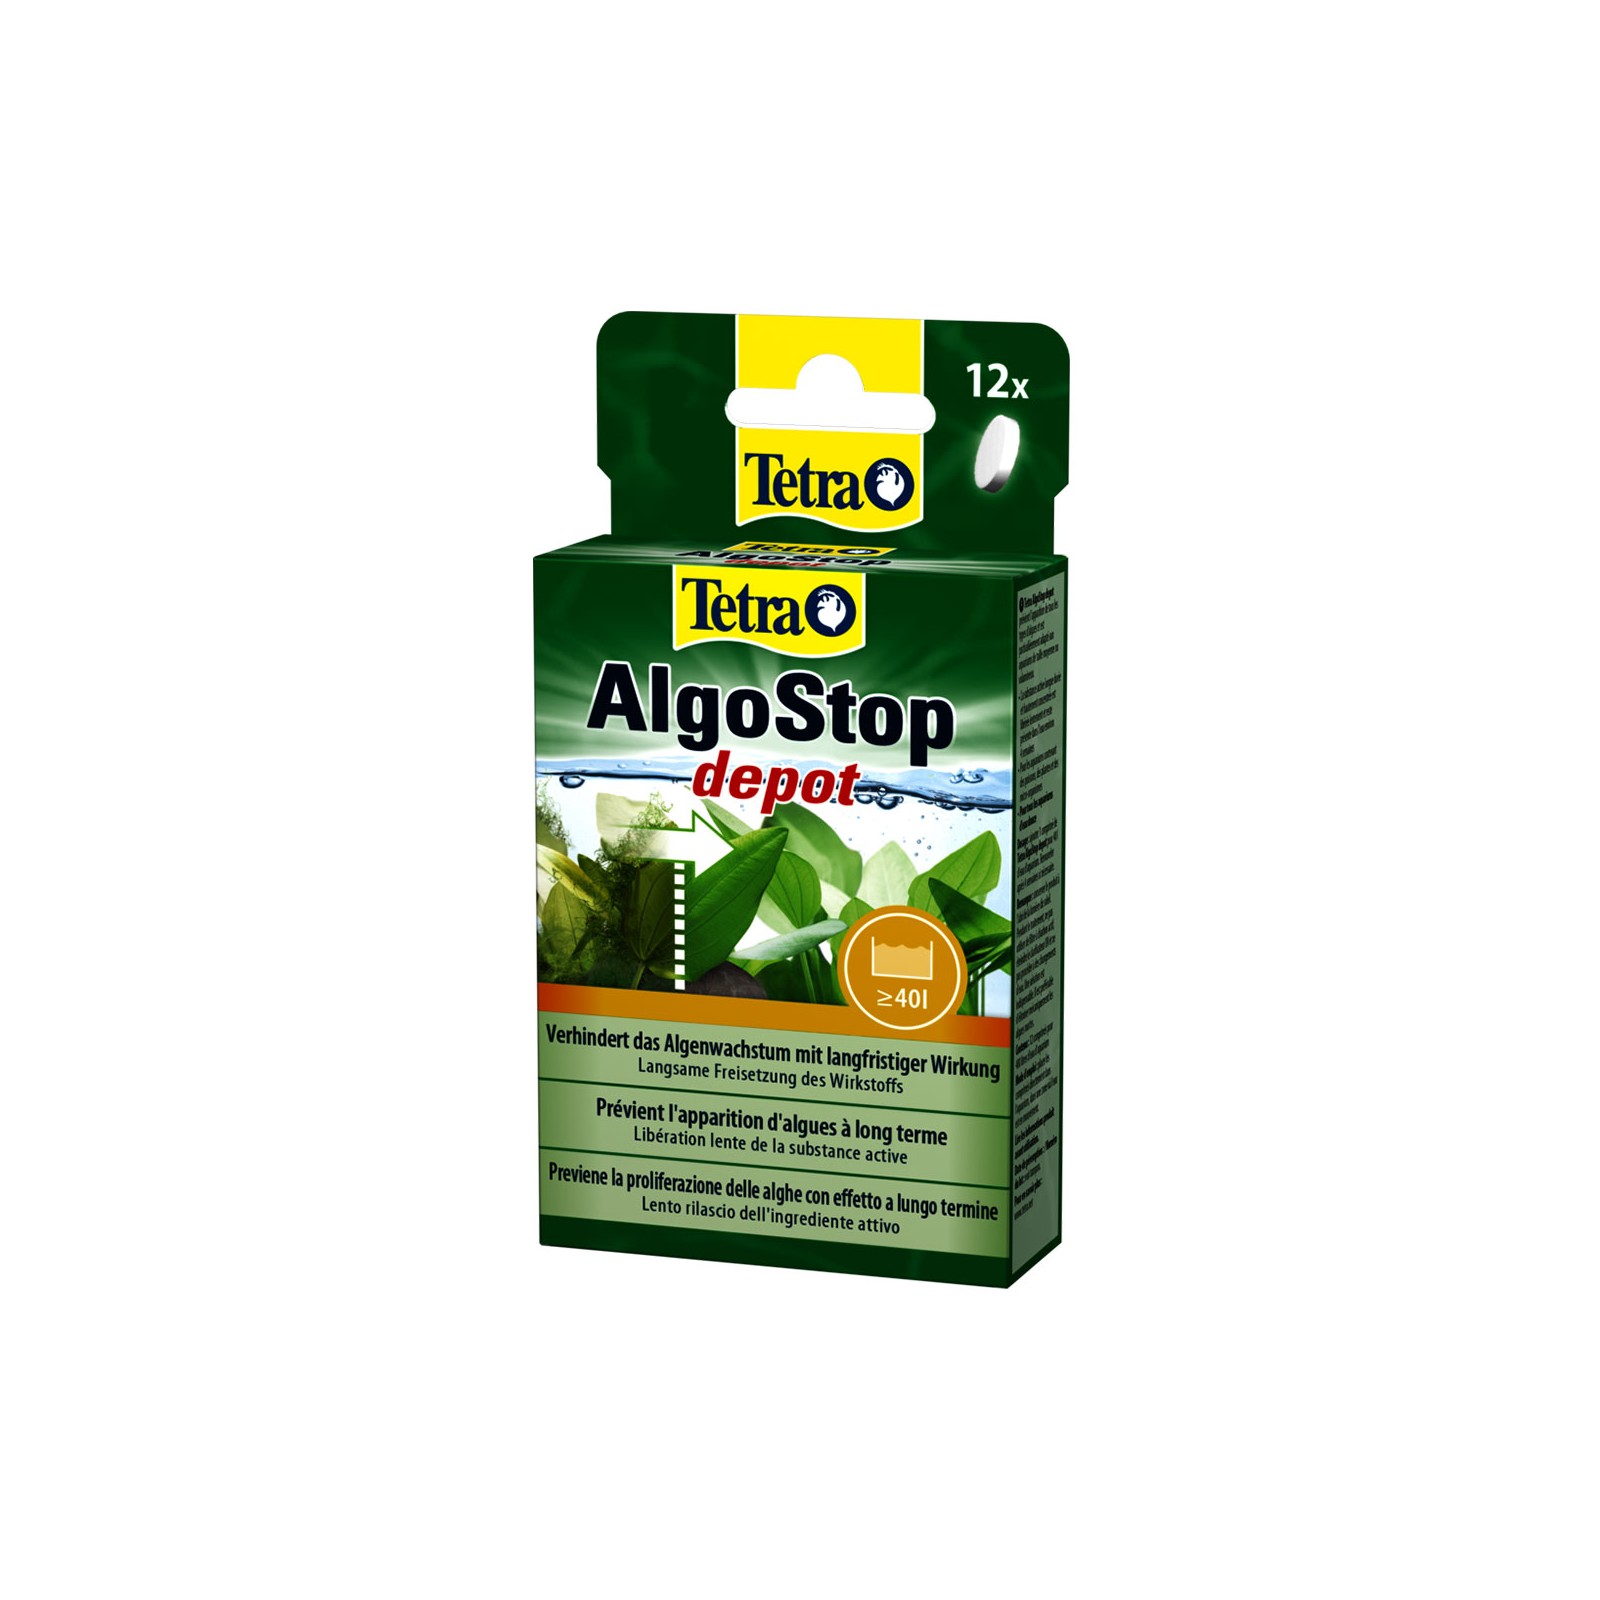 Tetra AlgoStop depot pastiglie per azione contro le alghe filamentose e a pennello in acquario